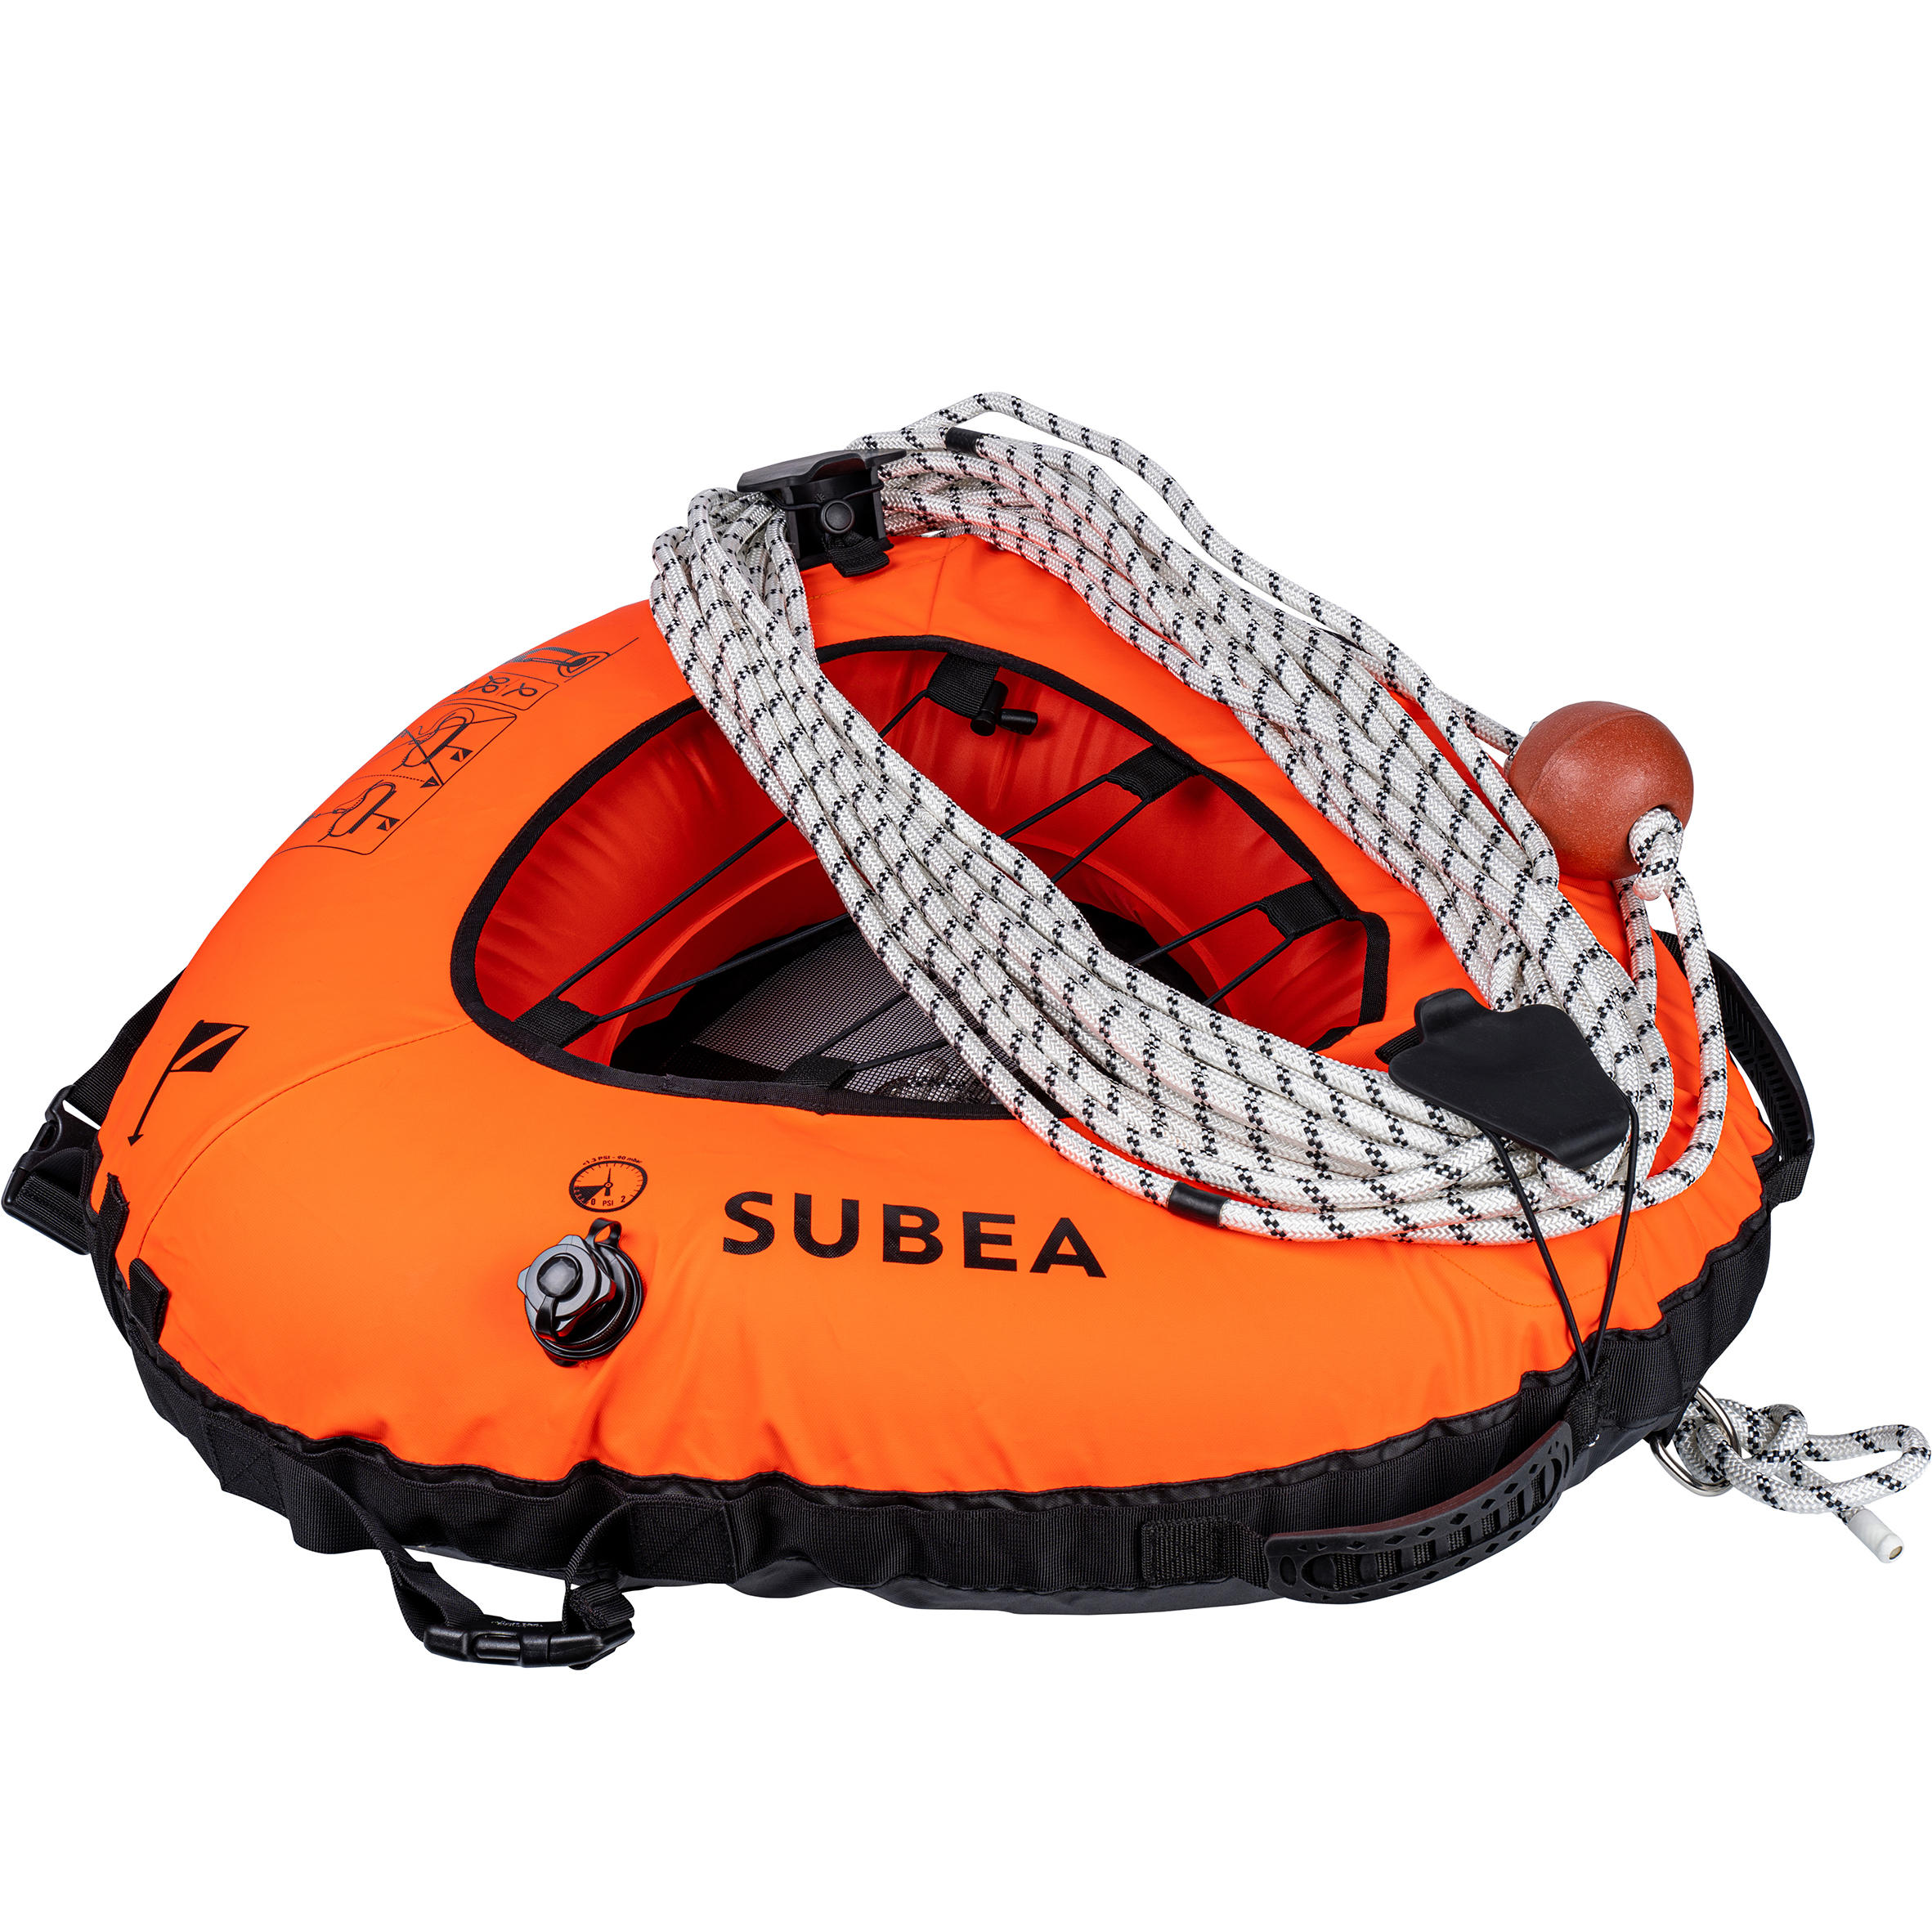 Baliză scufundare în apnee FRD 500 Deep 20 + coardă inclusă SUBEA 500